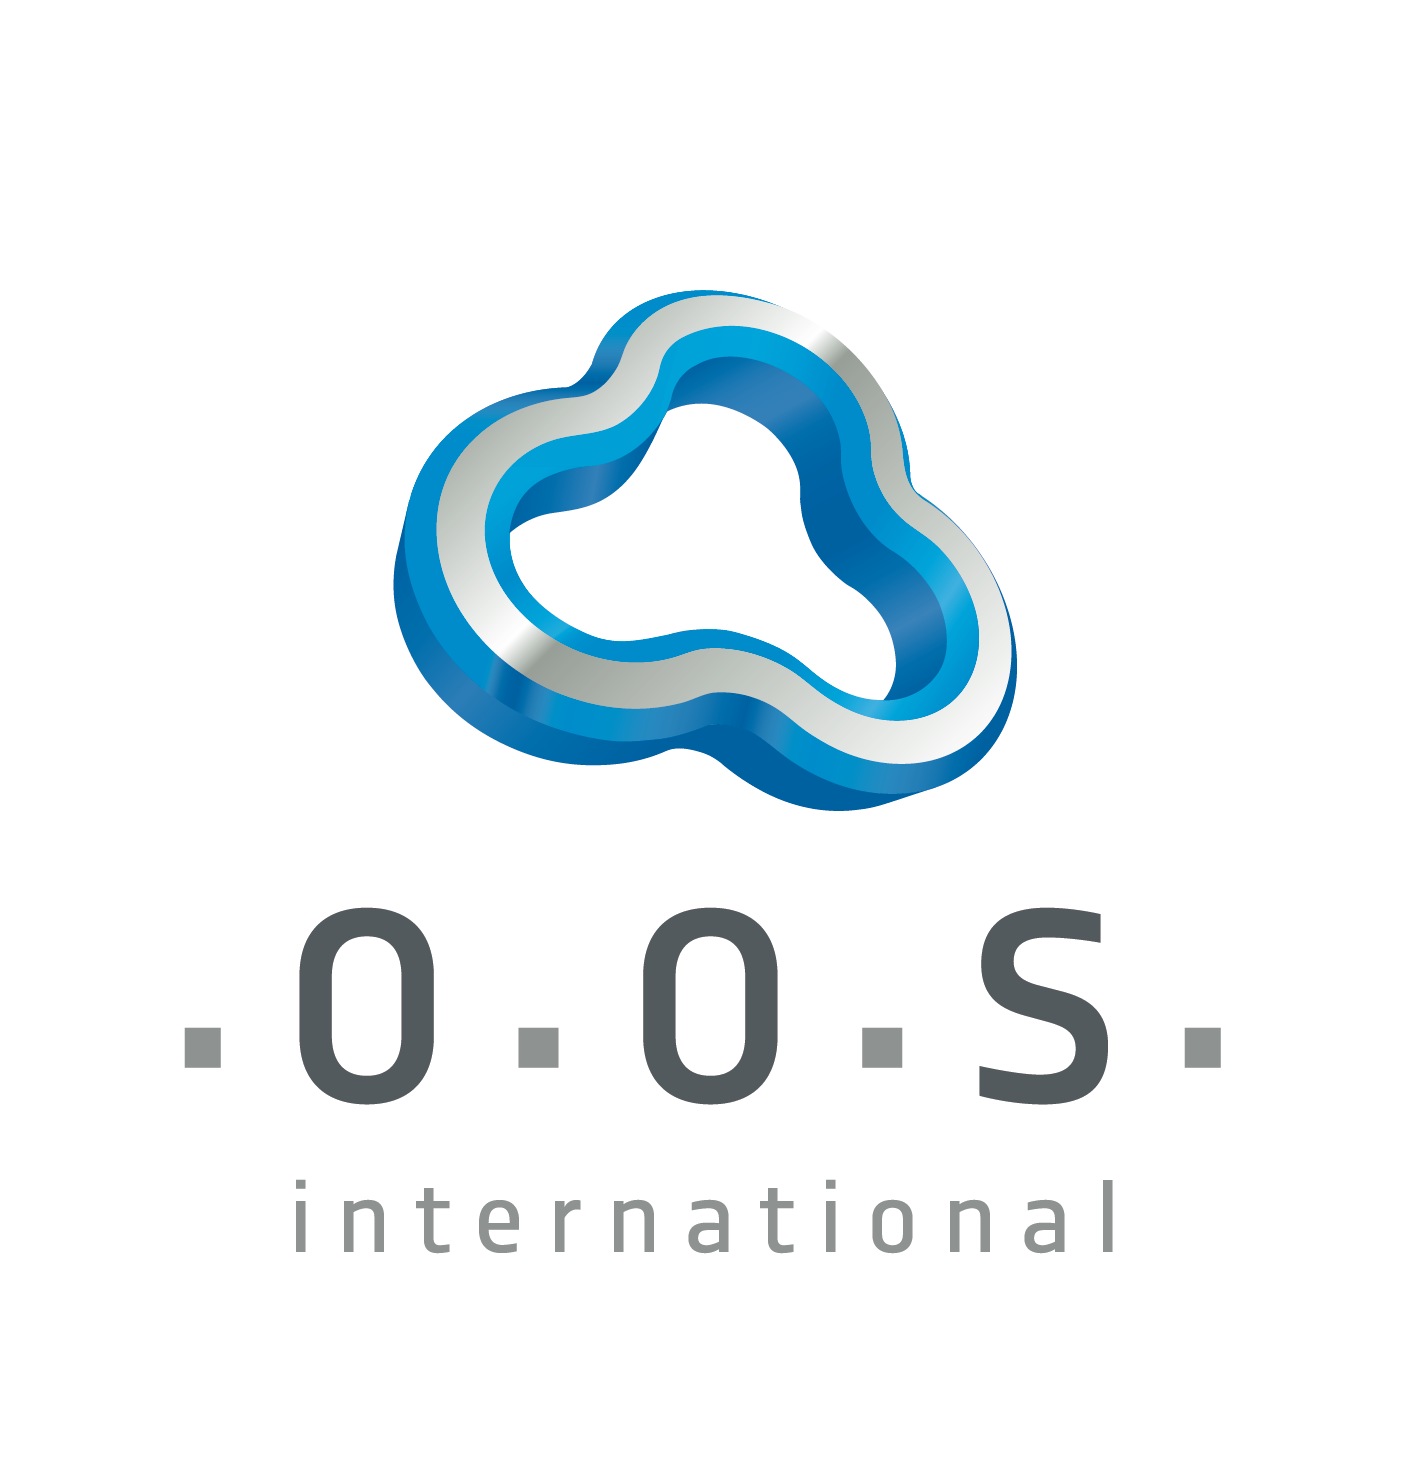 OOS International